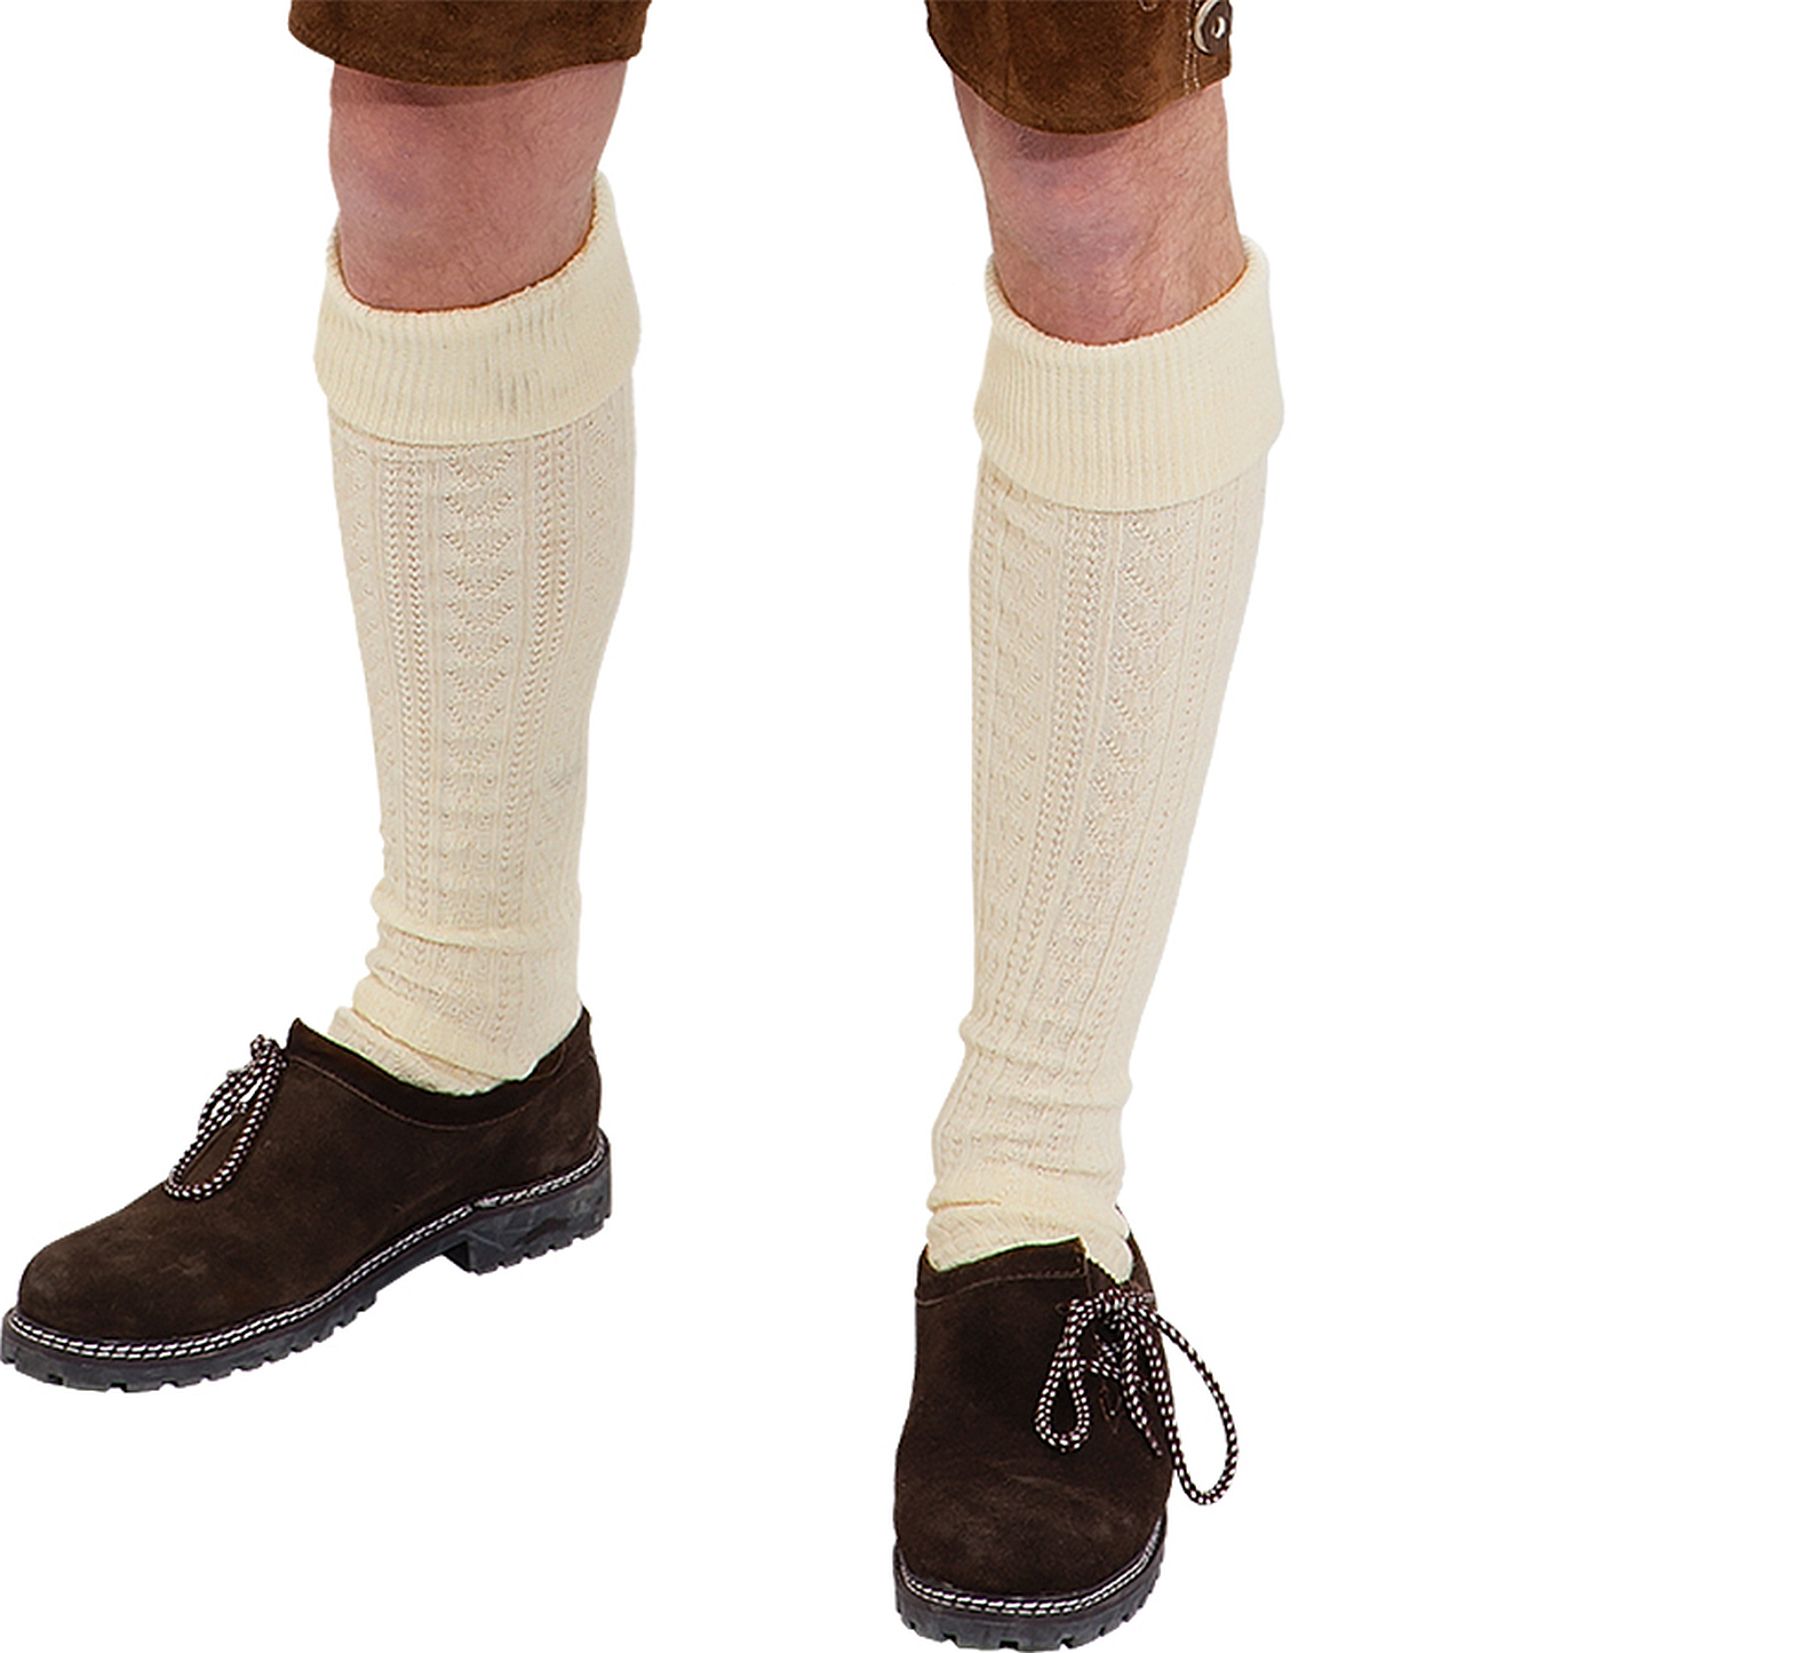 Kneehighs socks, creme-white